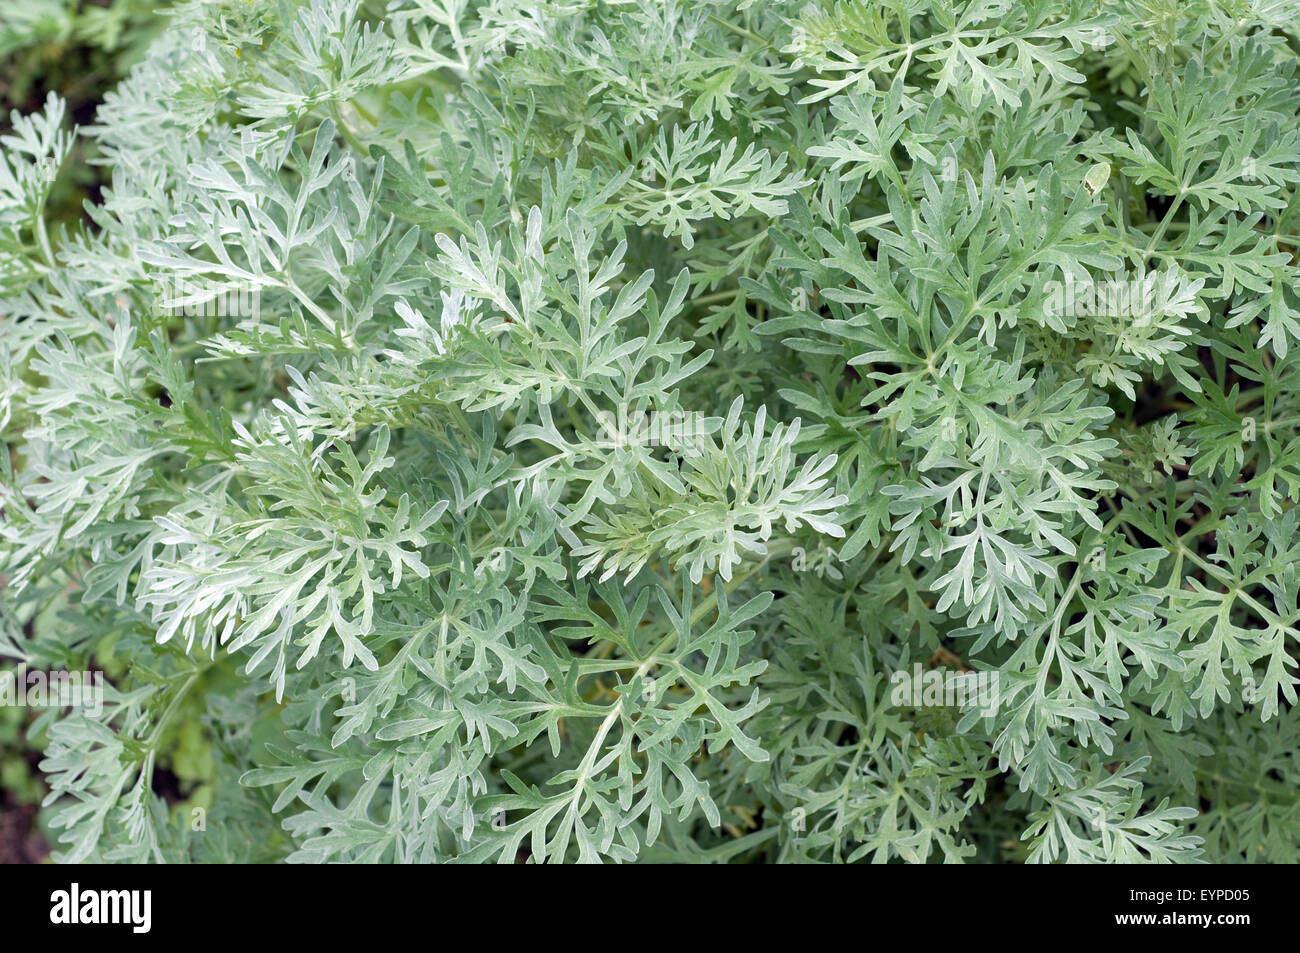 Wermut, Artemisia absinthium, Wildpflanzen Heilpflanzen Kraeuterpflanze,,, Foto de stock